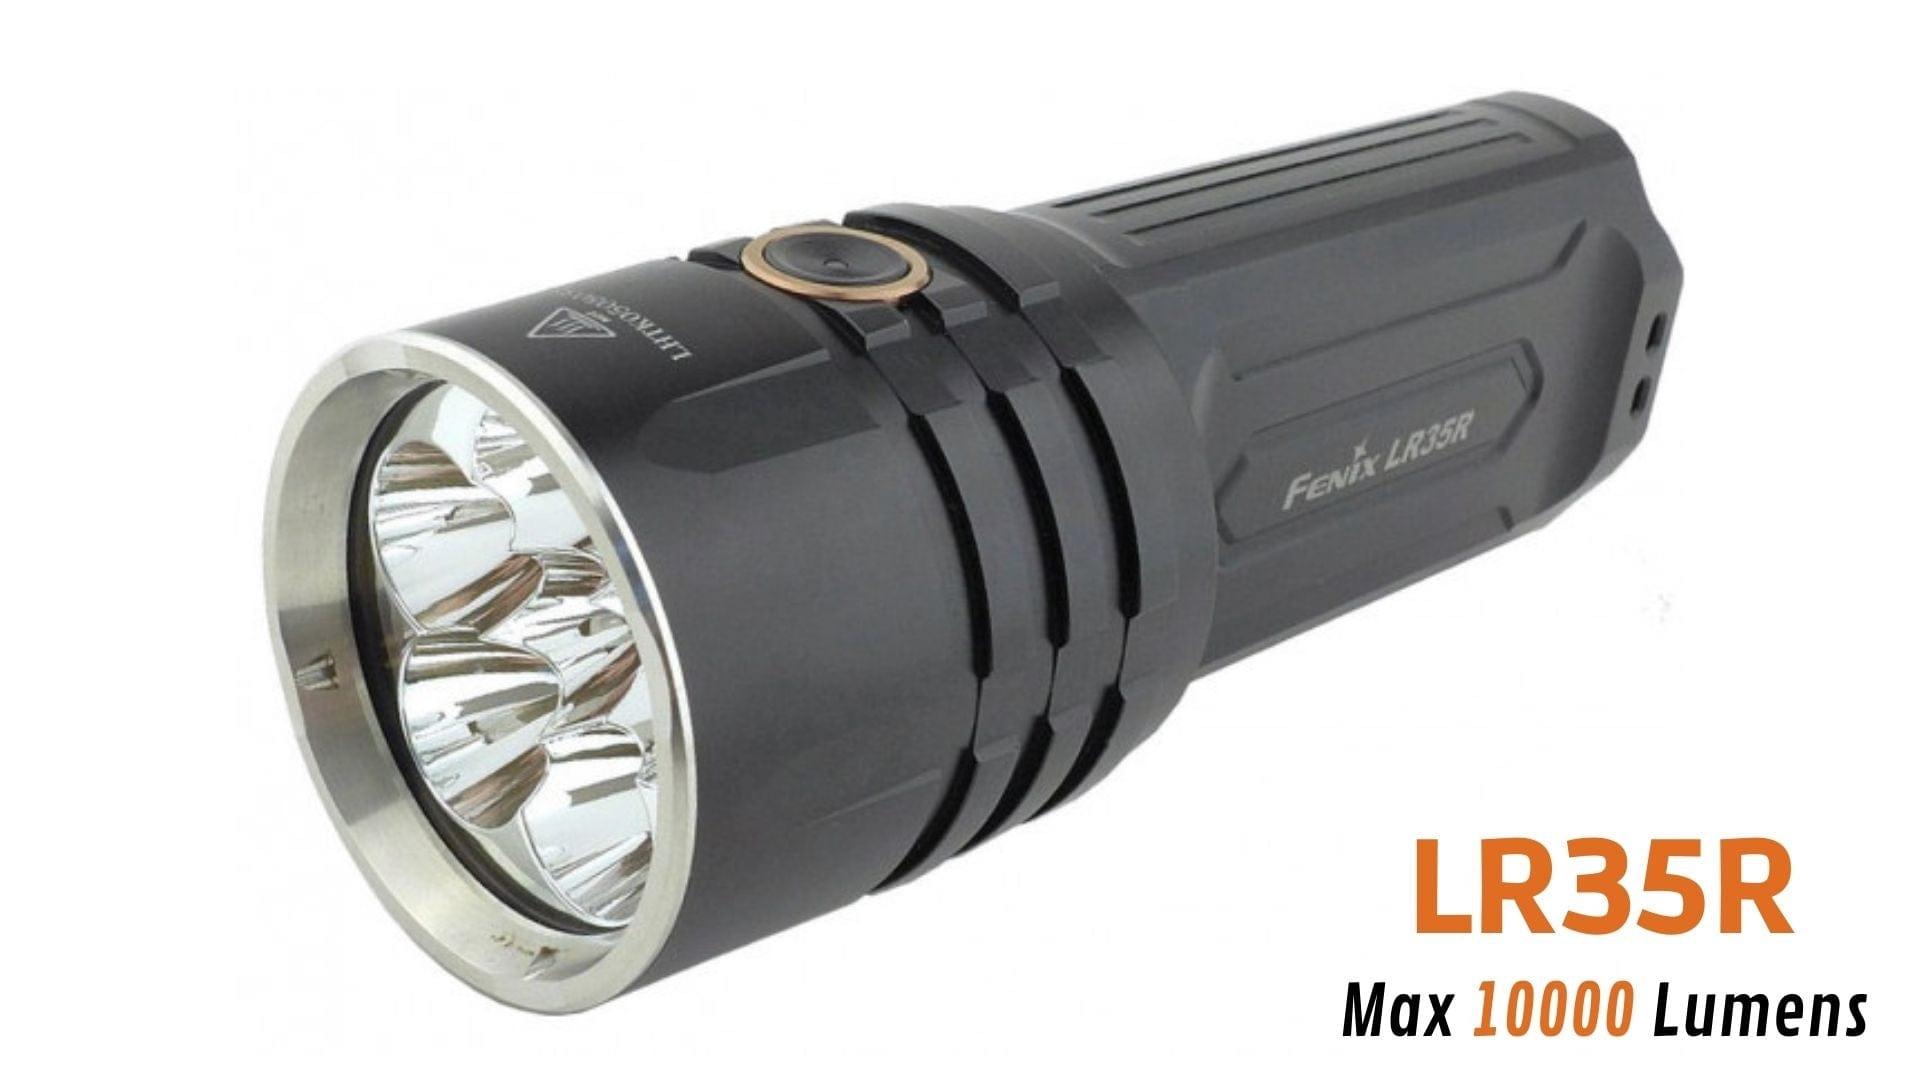 Fenix LR35R 10000 lumens la lampe tactique ultra puissante et